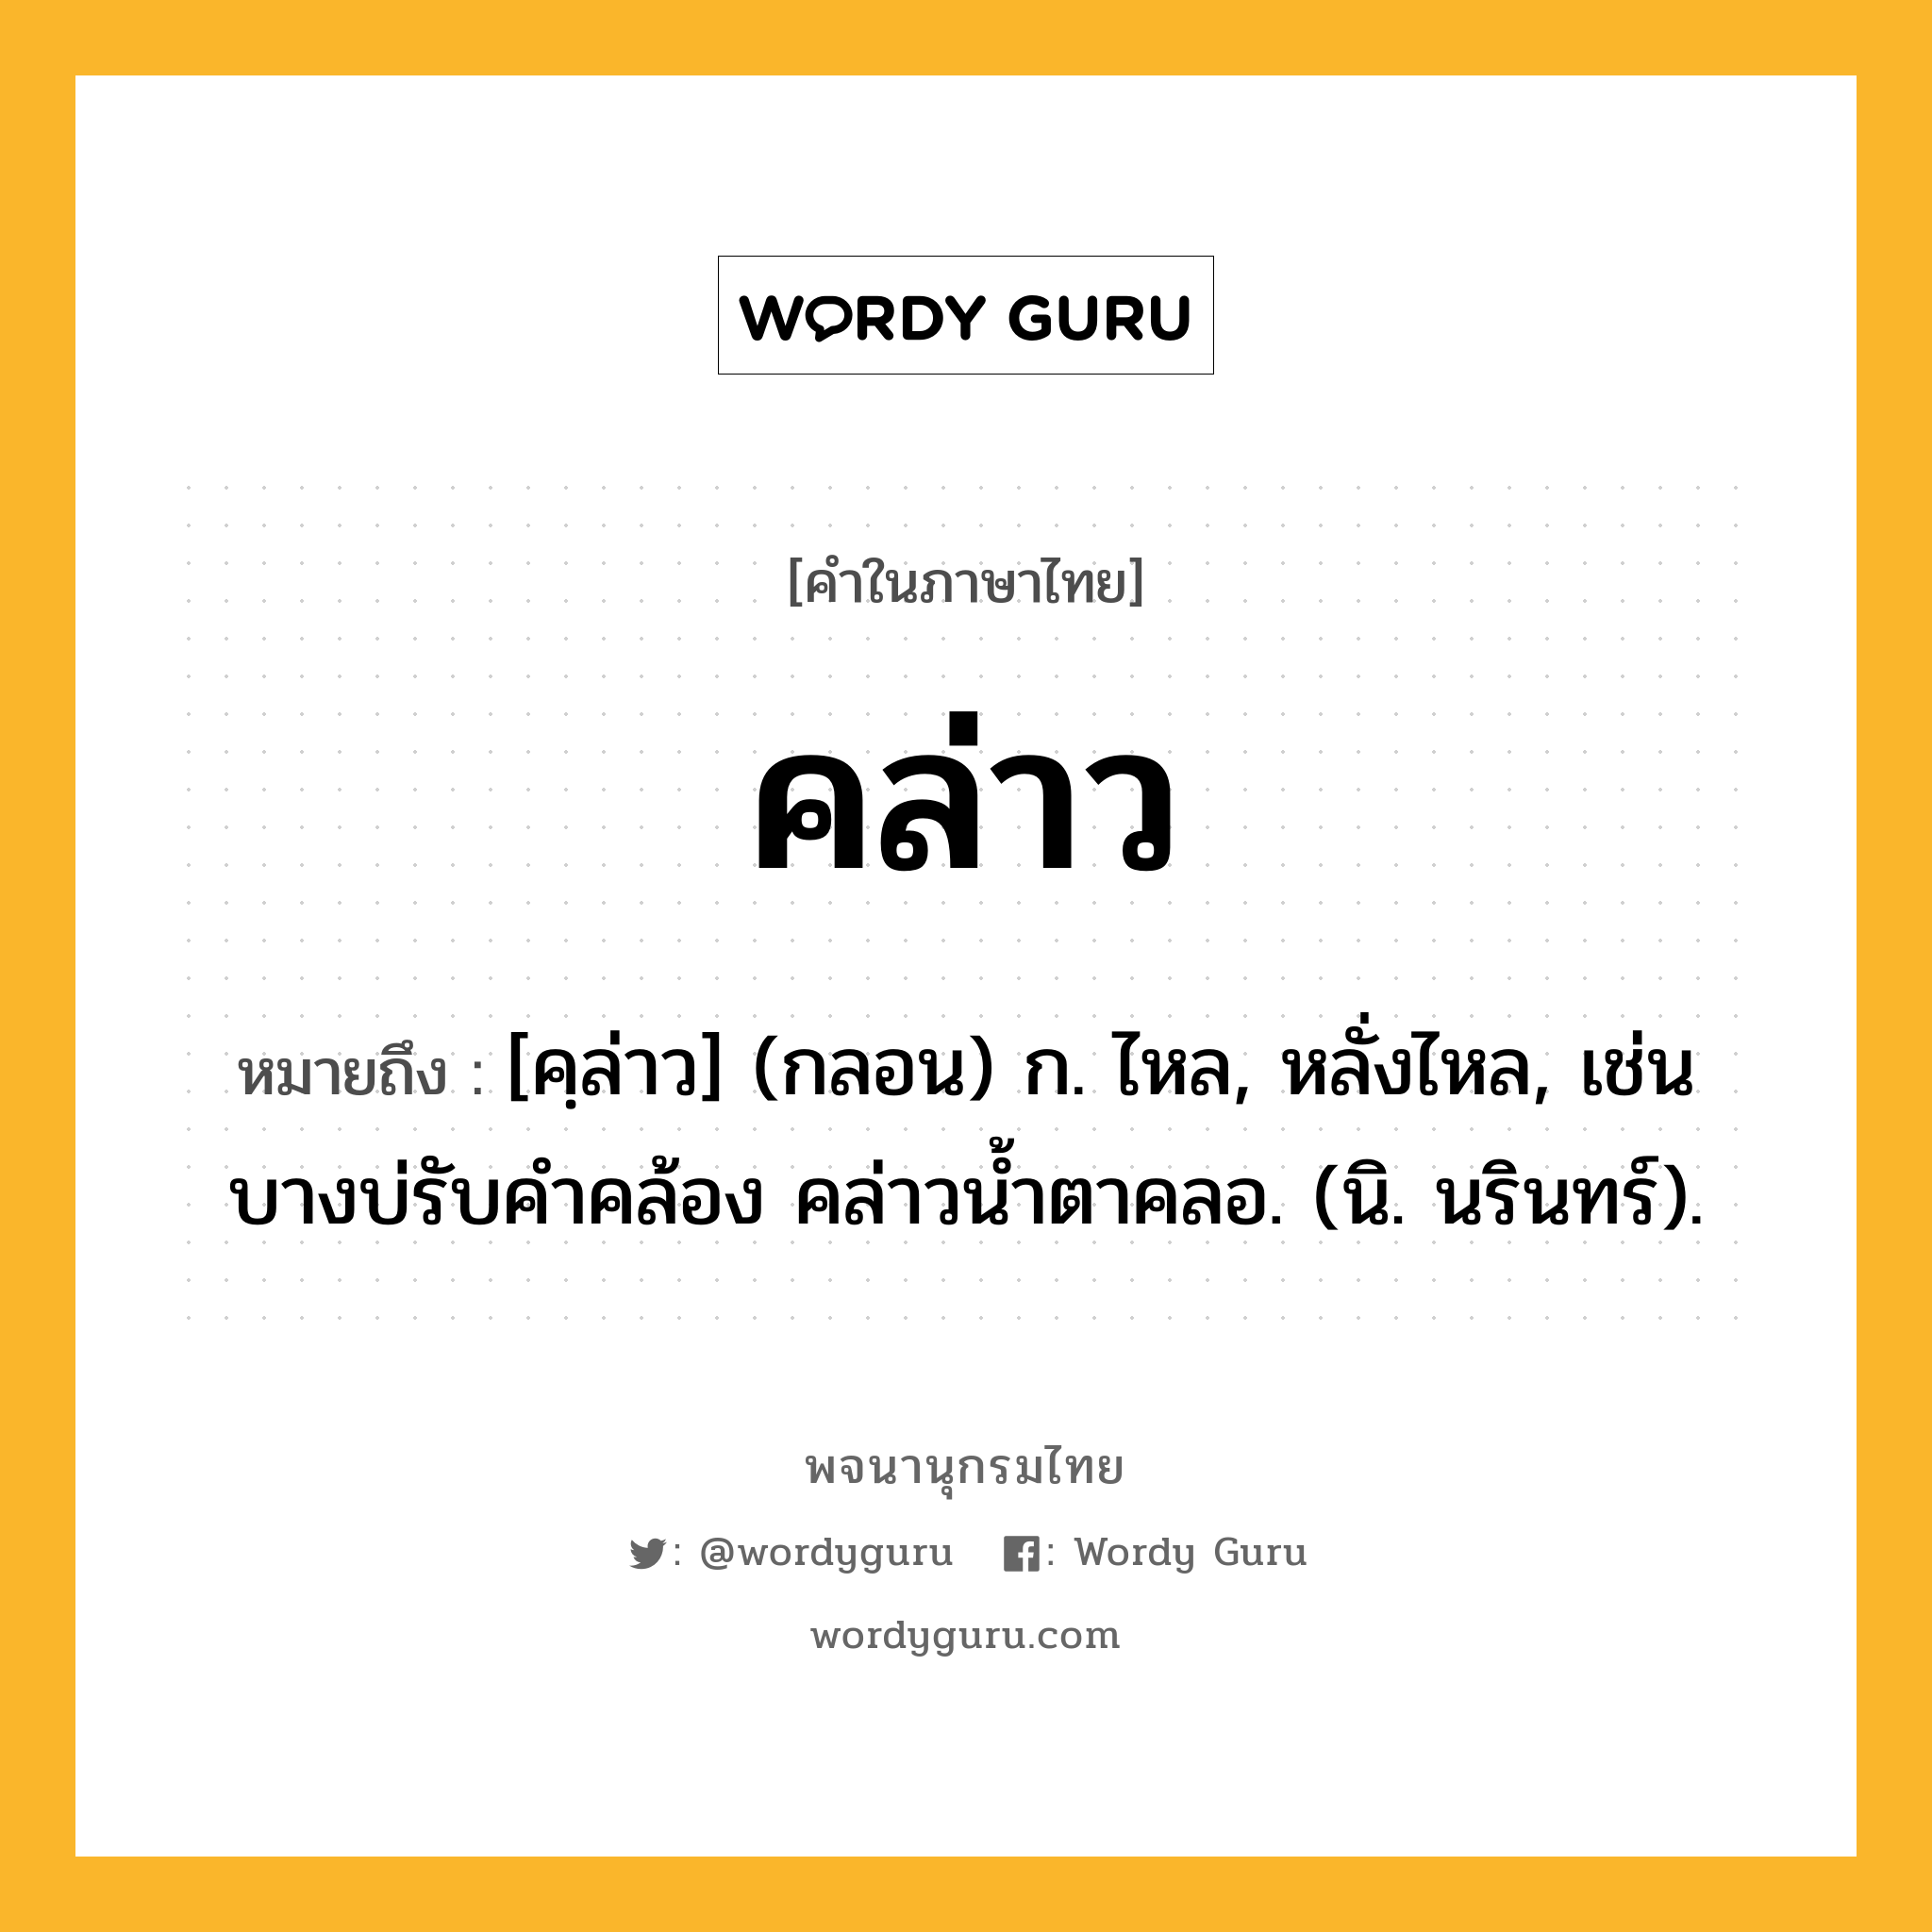 คล่าว หมายถึงอะไร?, คำในภาษาไทย คล่าว หมายถึง [คฺล่าว] (กลอน) ก. ไหล, หลั่งไหล, เช่น บางบ่รับคำคล้อง คล่าวน้ำตาคลอ. (นิ. นรินทร์).